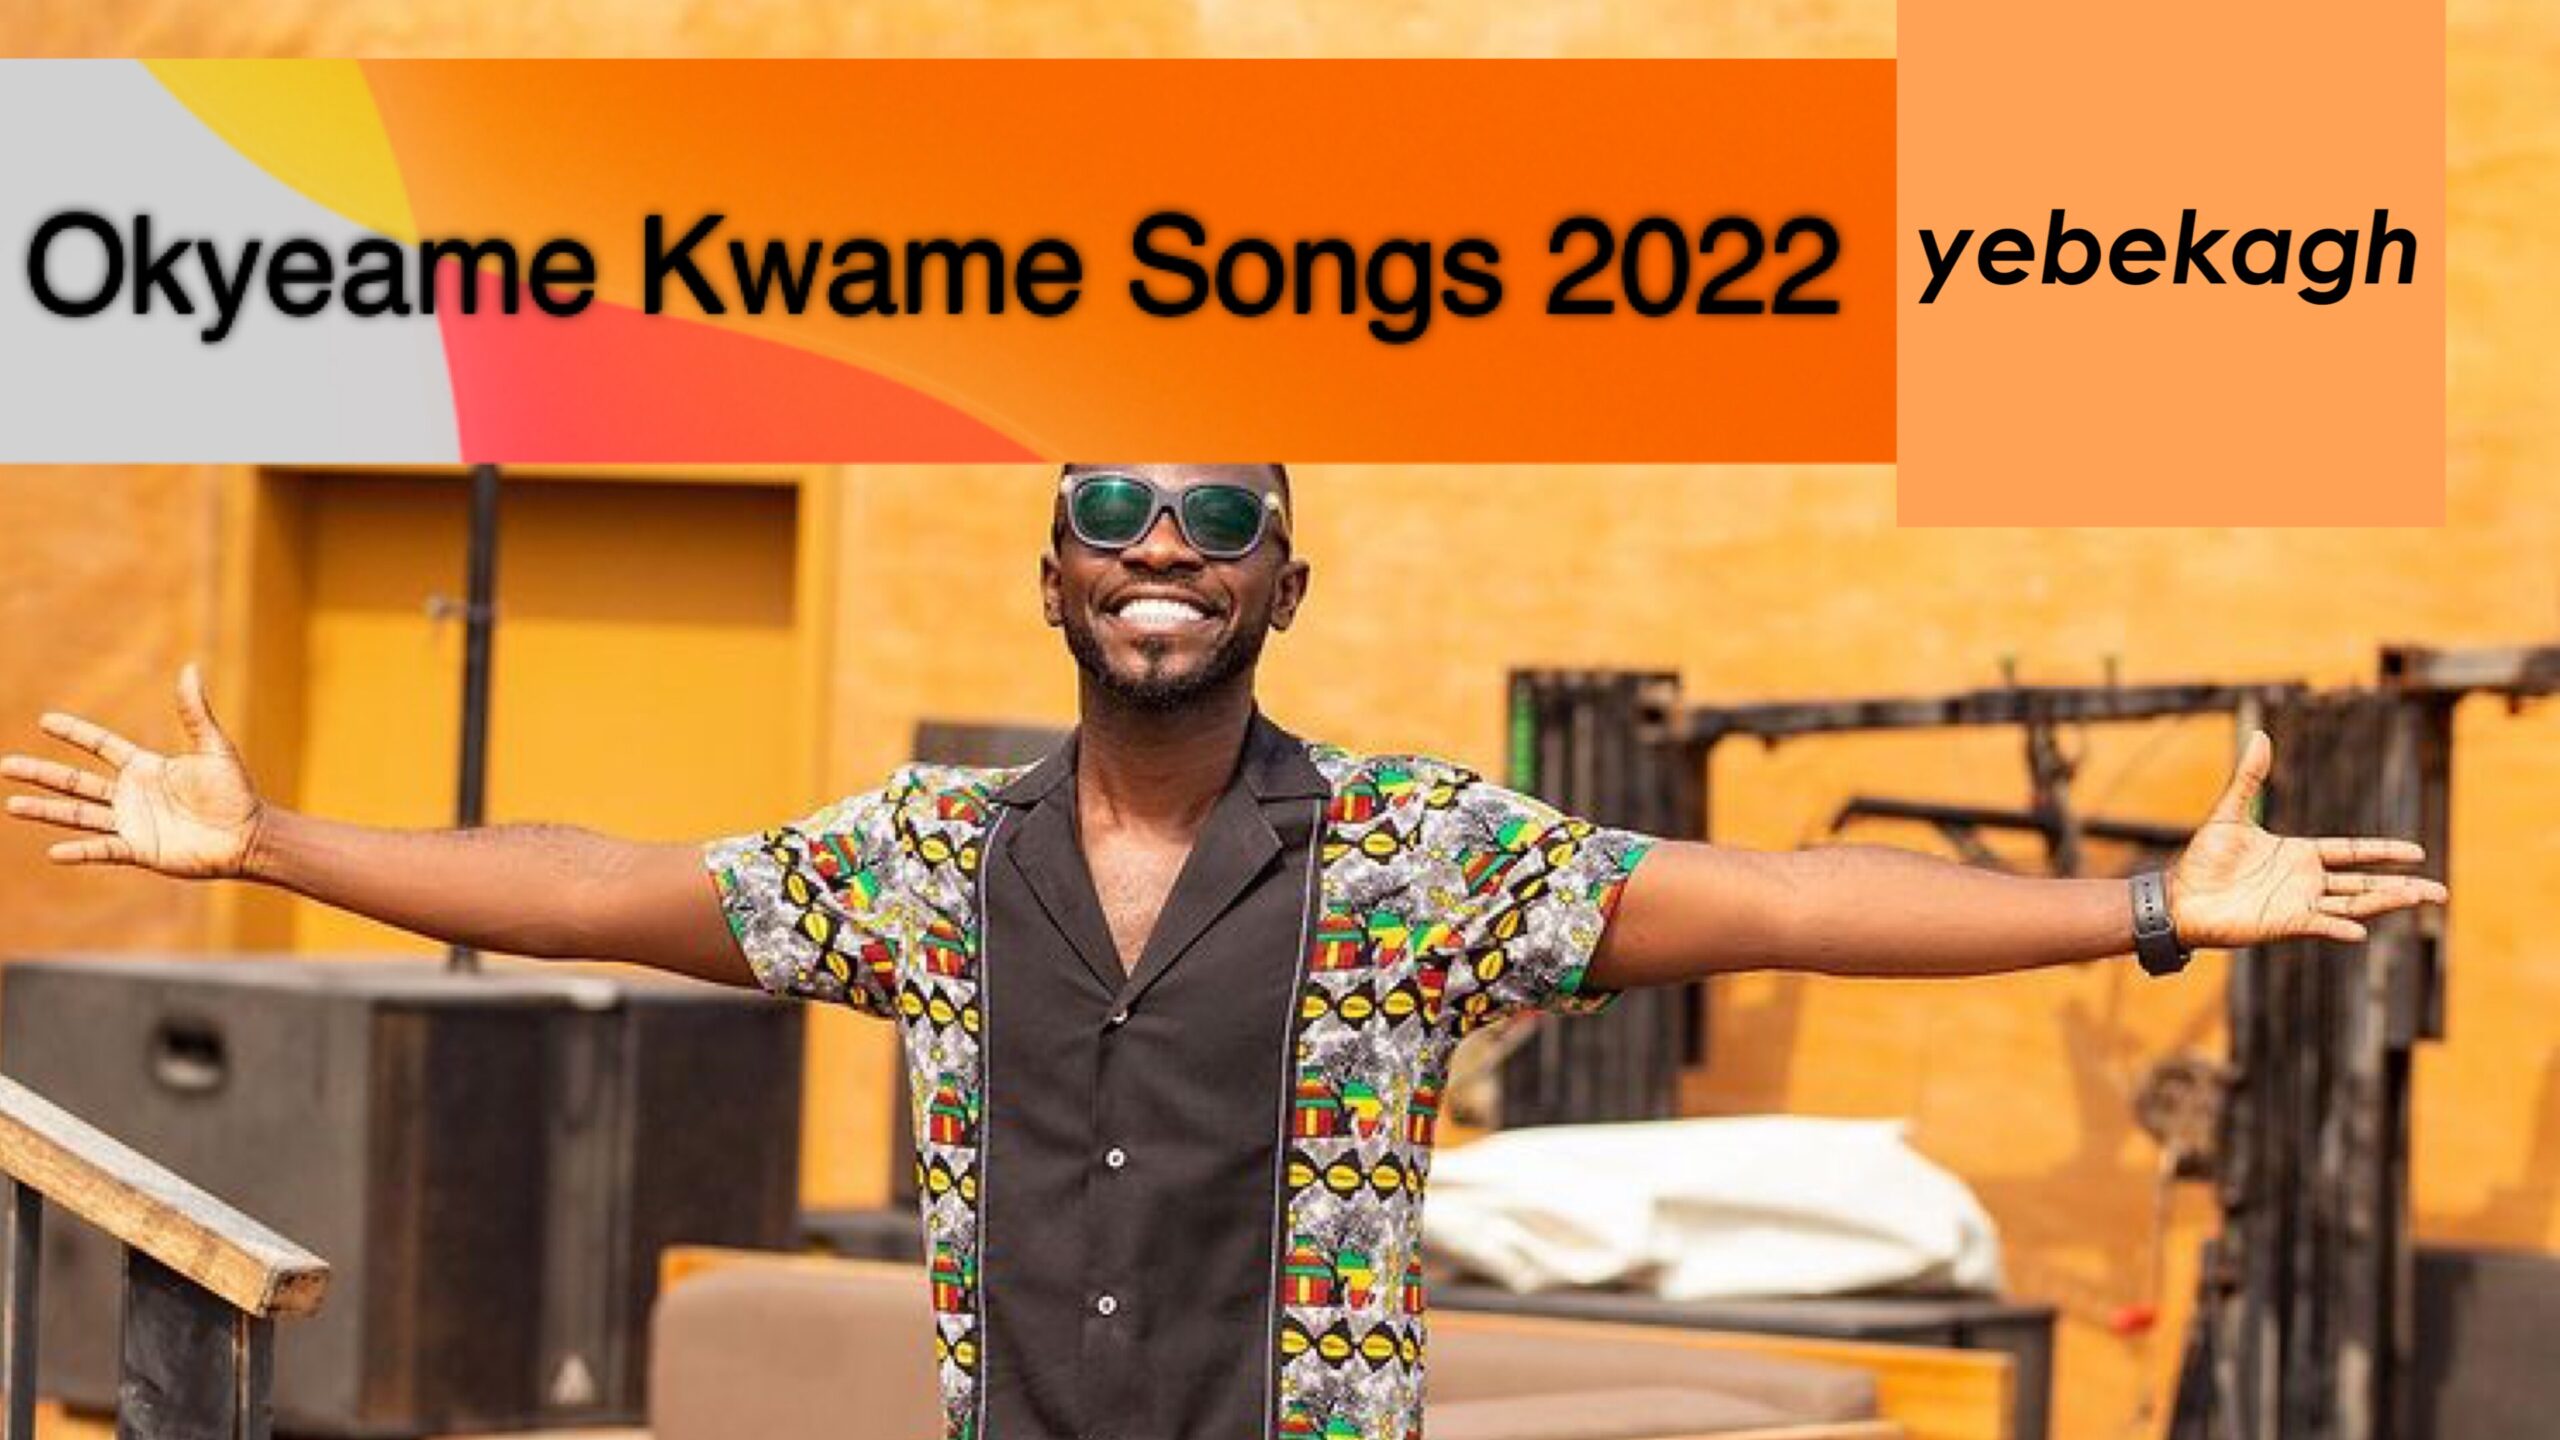 Full List of Okyeame Kwame Songs in 2022